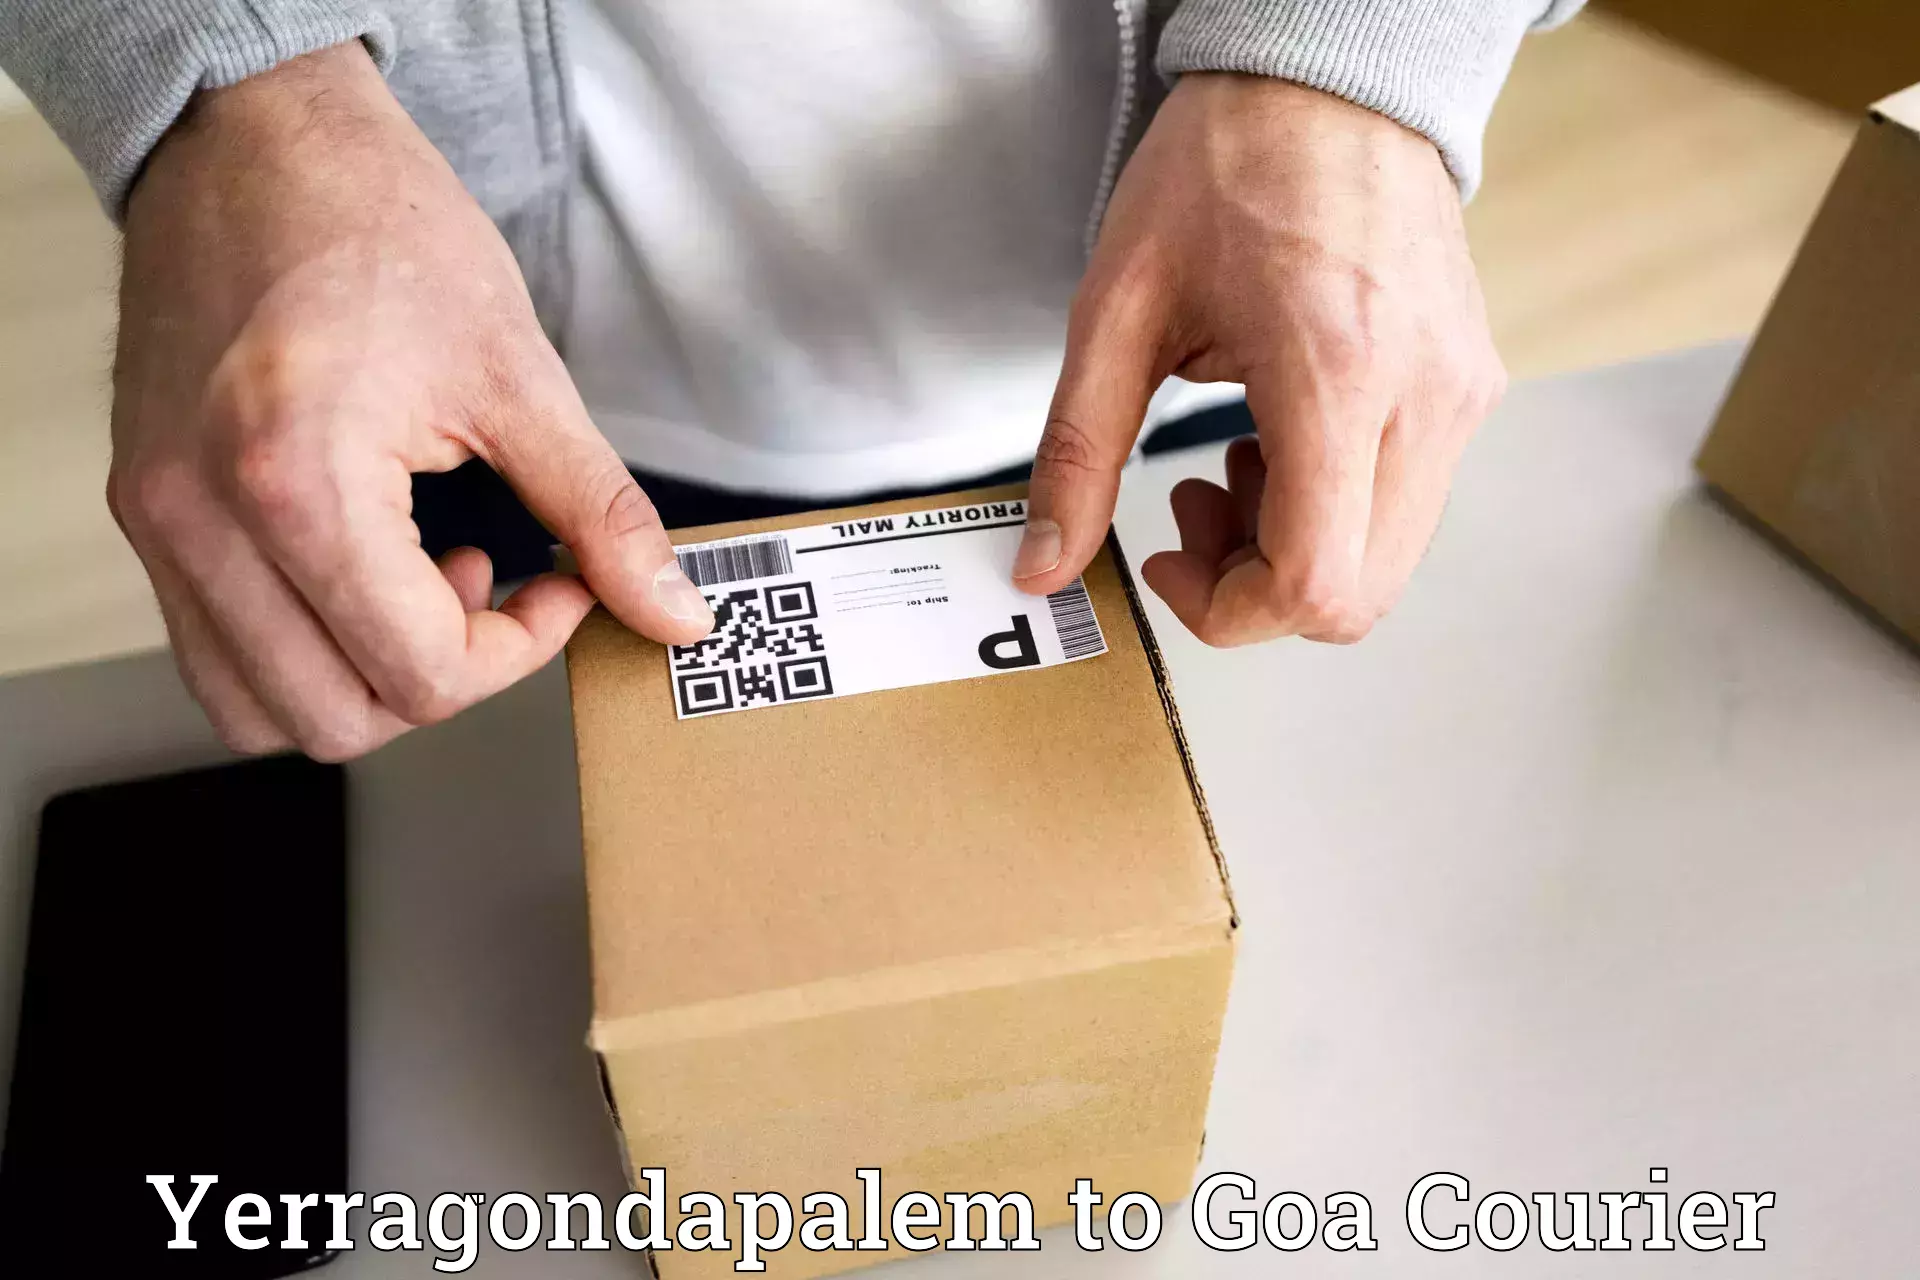 Next-day delivery options Yerragondapalem to Ponda